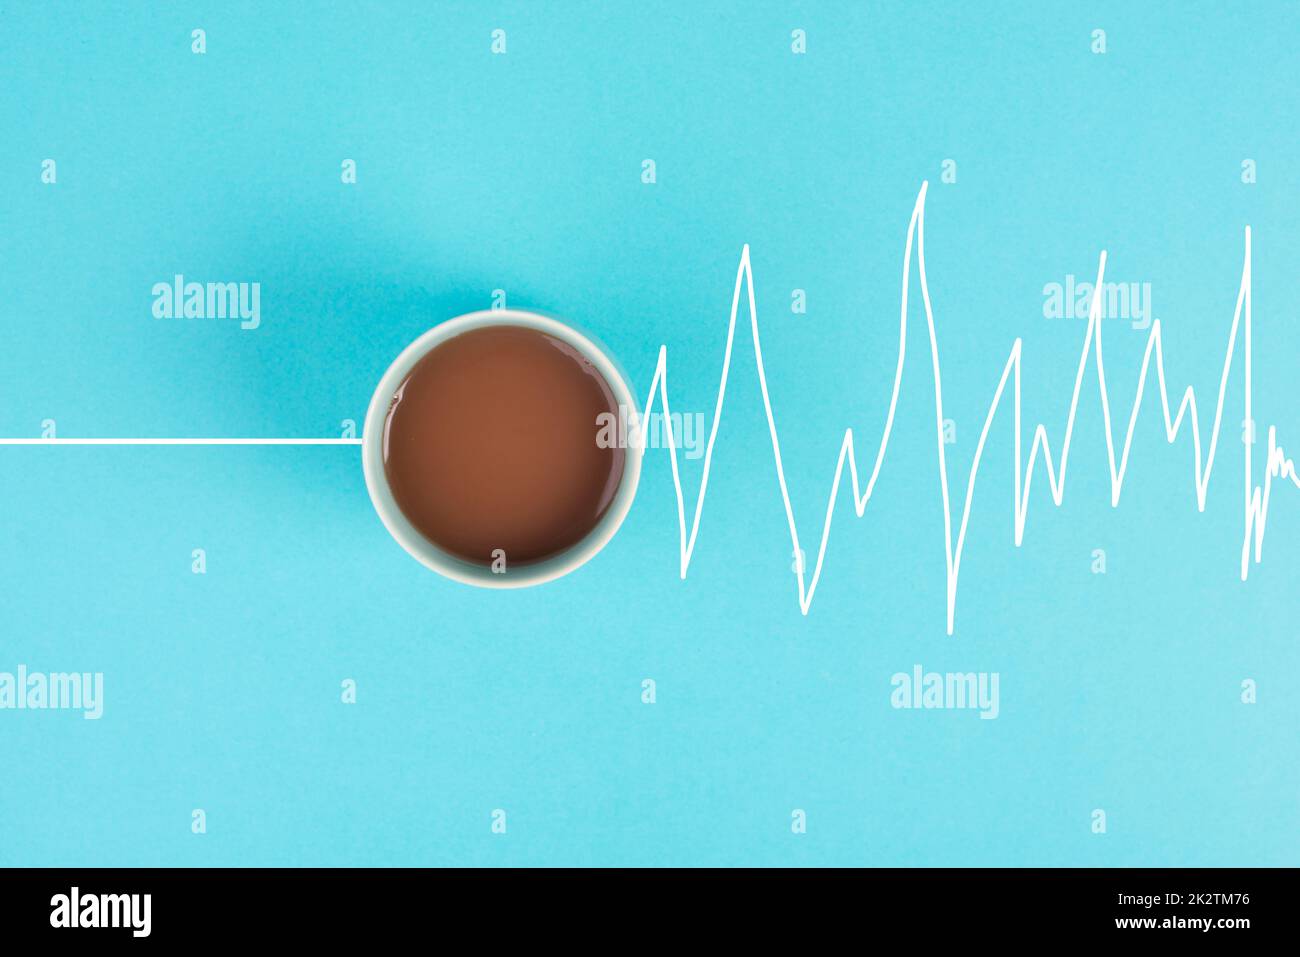 Tasse Kaffee am Morgen, aufwachen, Herzschlag steigt nach dem Koffeingetränk, eine Pause einlegen, hohe Energie, medizinisches Risiko Stockfoto